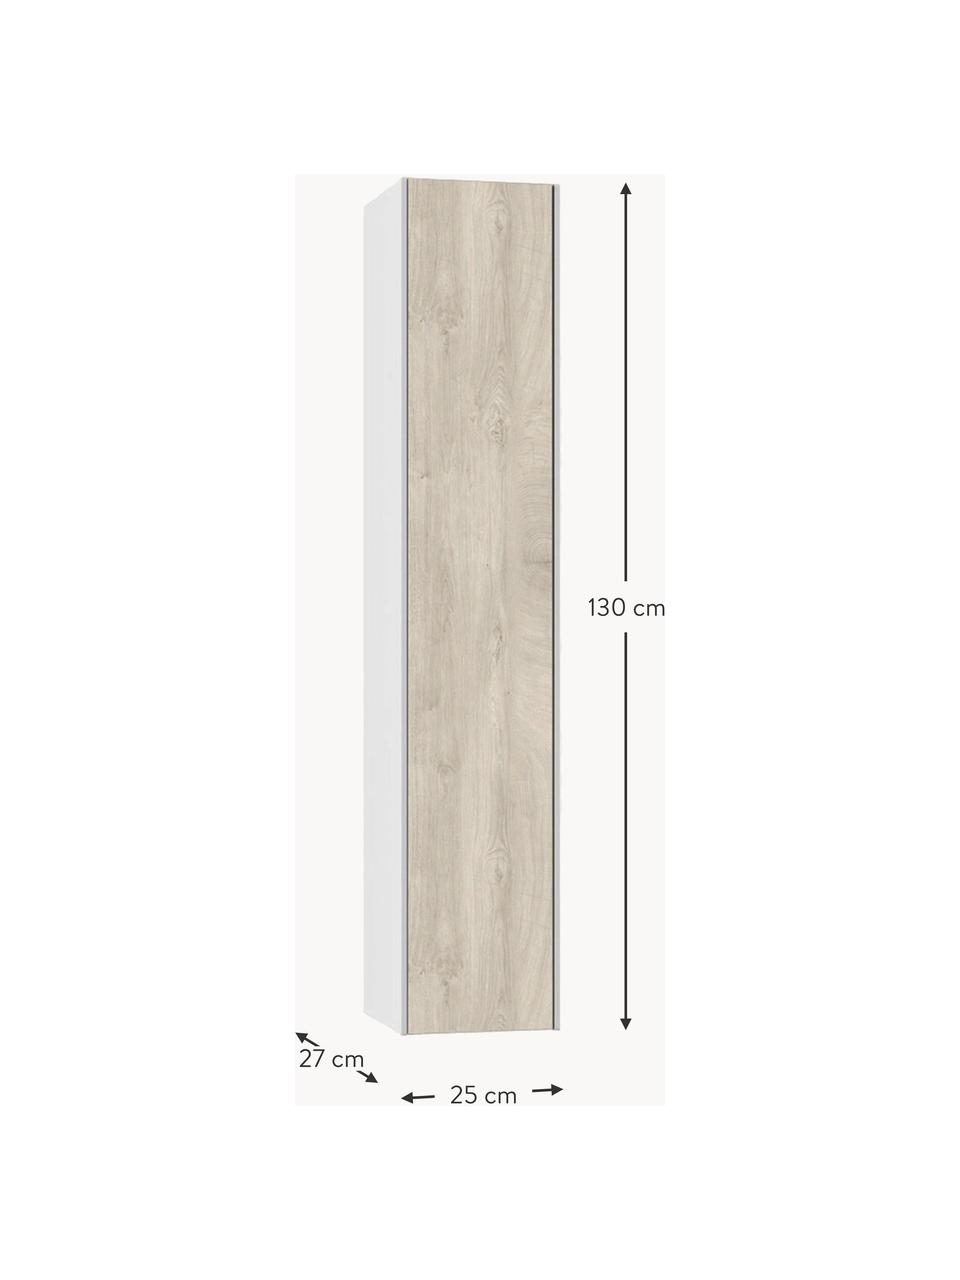 Vysoká koupelnová skříňka Ago, Š 25 cm, Vzhled dubového dřeva, bílá, Š 25 cm, V 130 cm